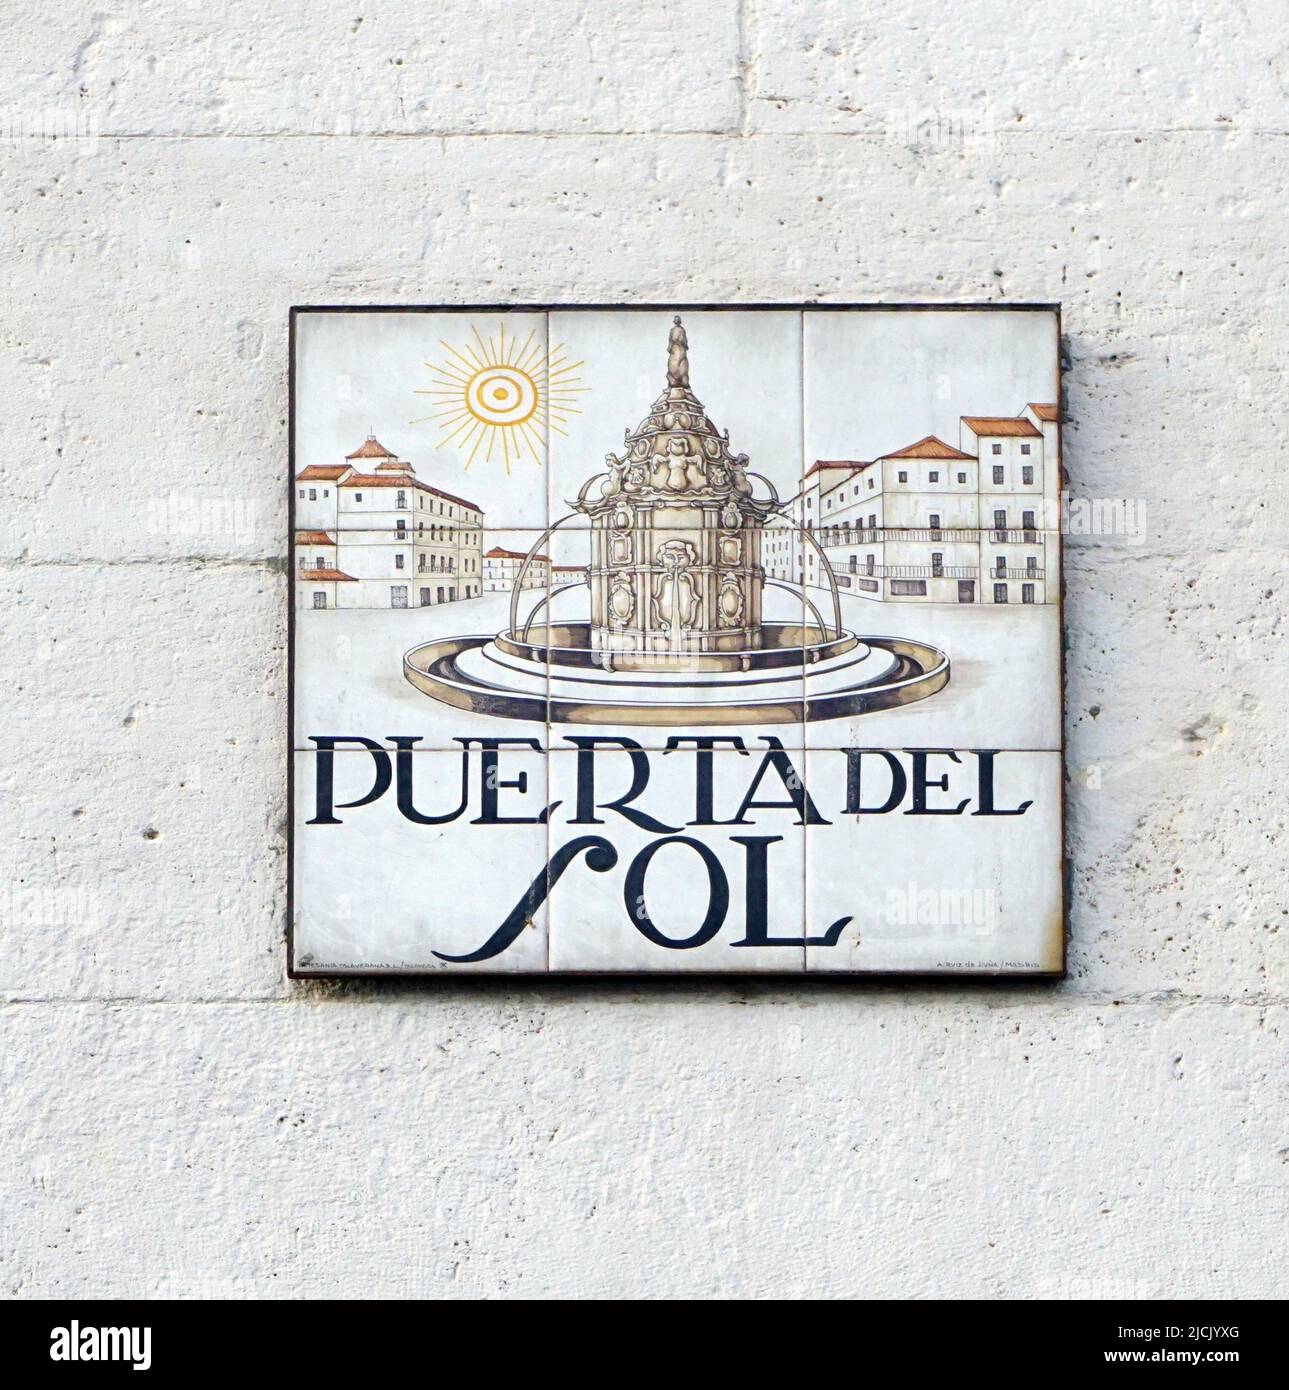 Puerta del Sol square in Madrid Spain Stock Photo